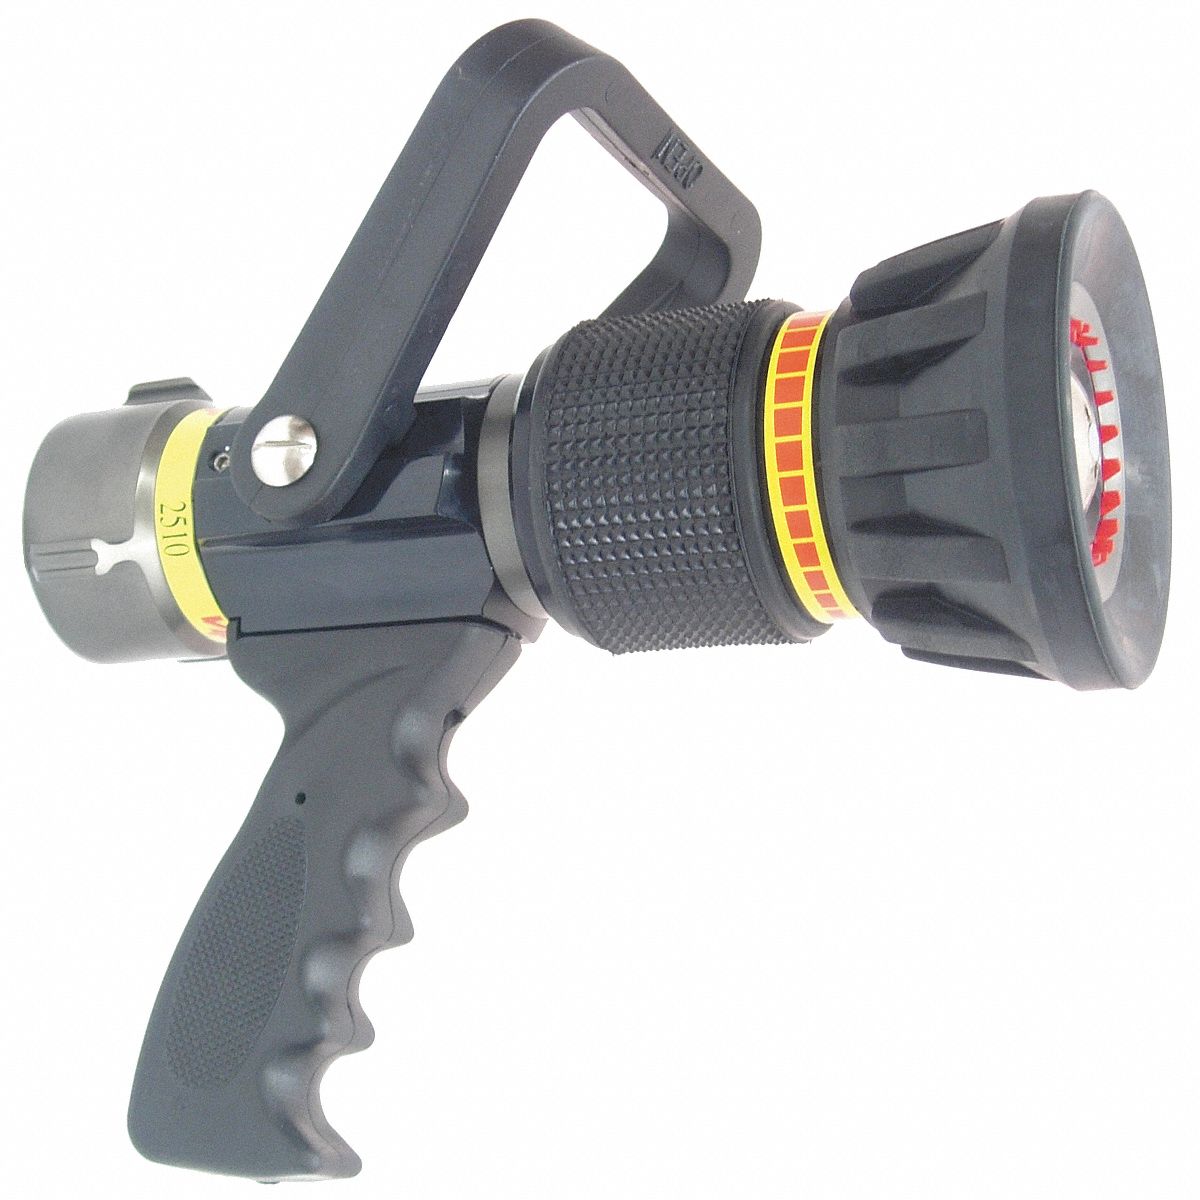 Fire Hose Nozzle: Constant Pressure, Constant Pressure (Auto), Solid Stream, CG2510-95